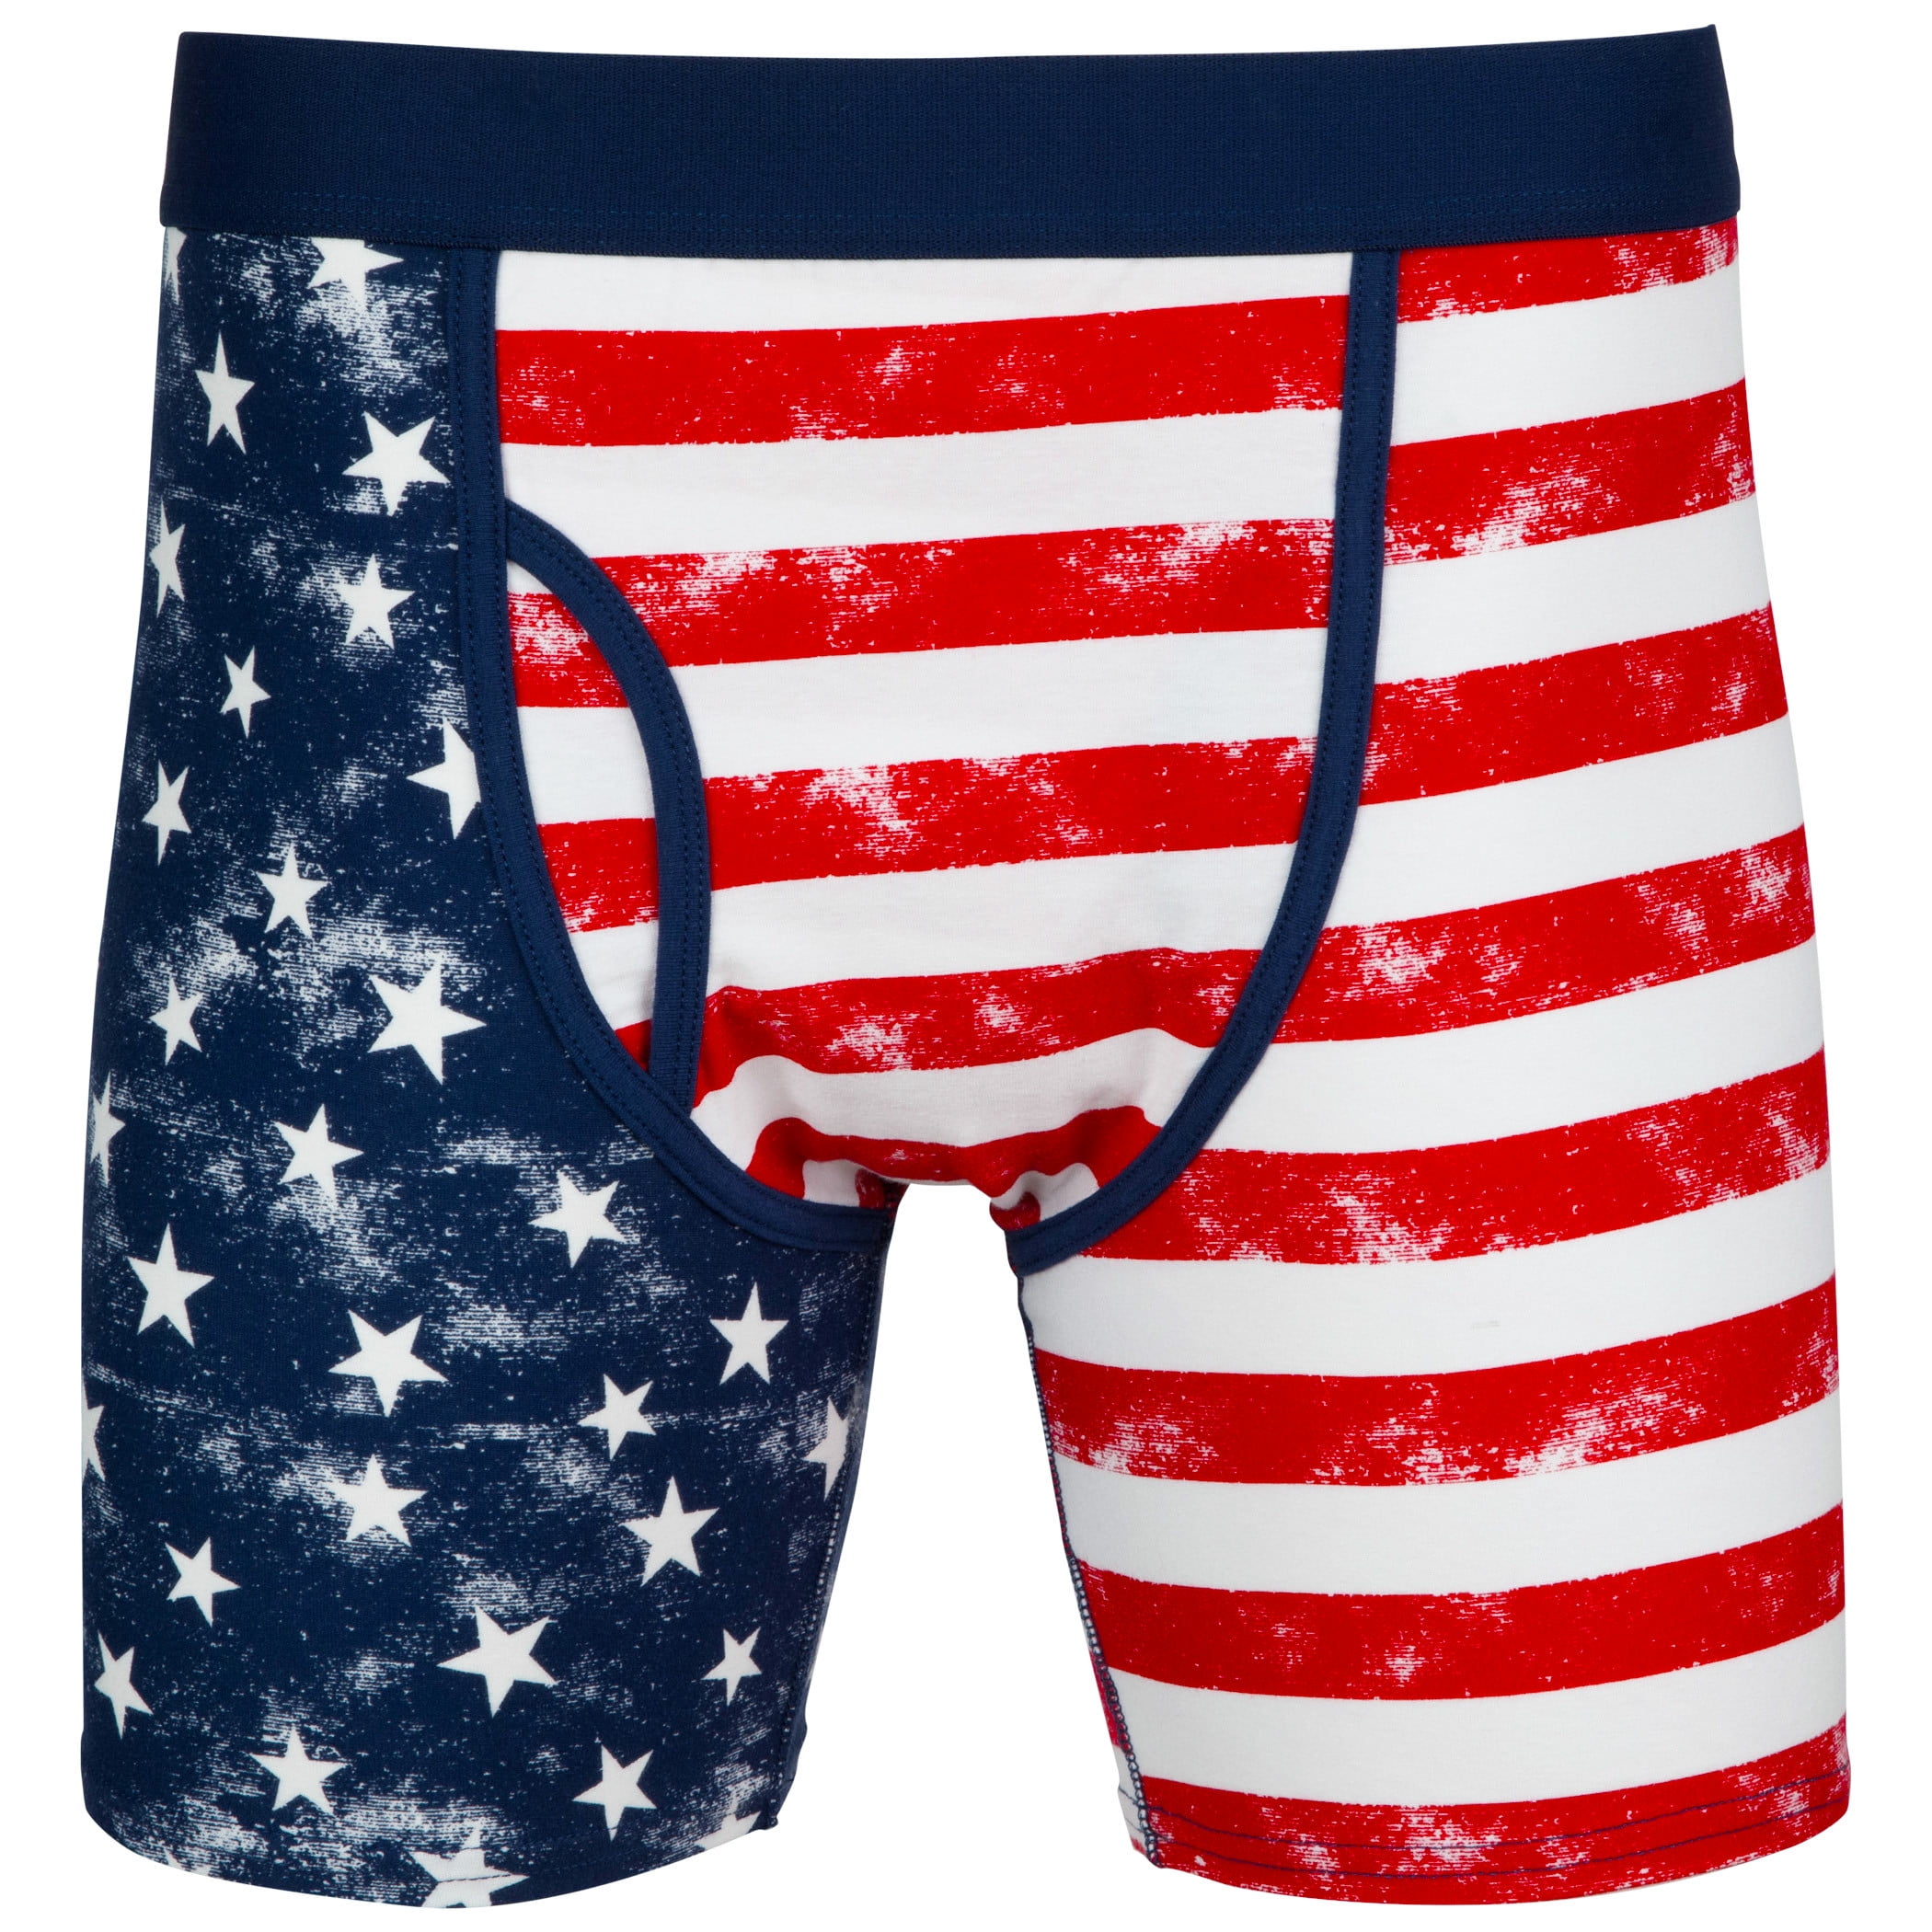 Mens Yellow Patriotic US Flag Bacon Boxer Briefs Underwear Medium 